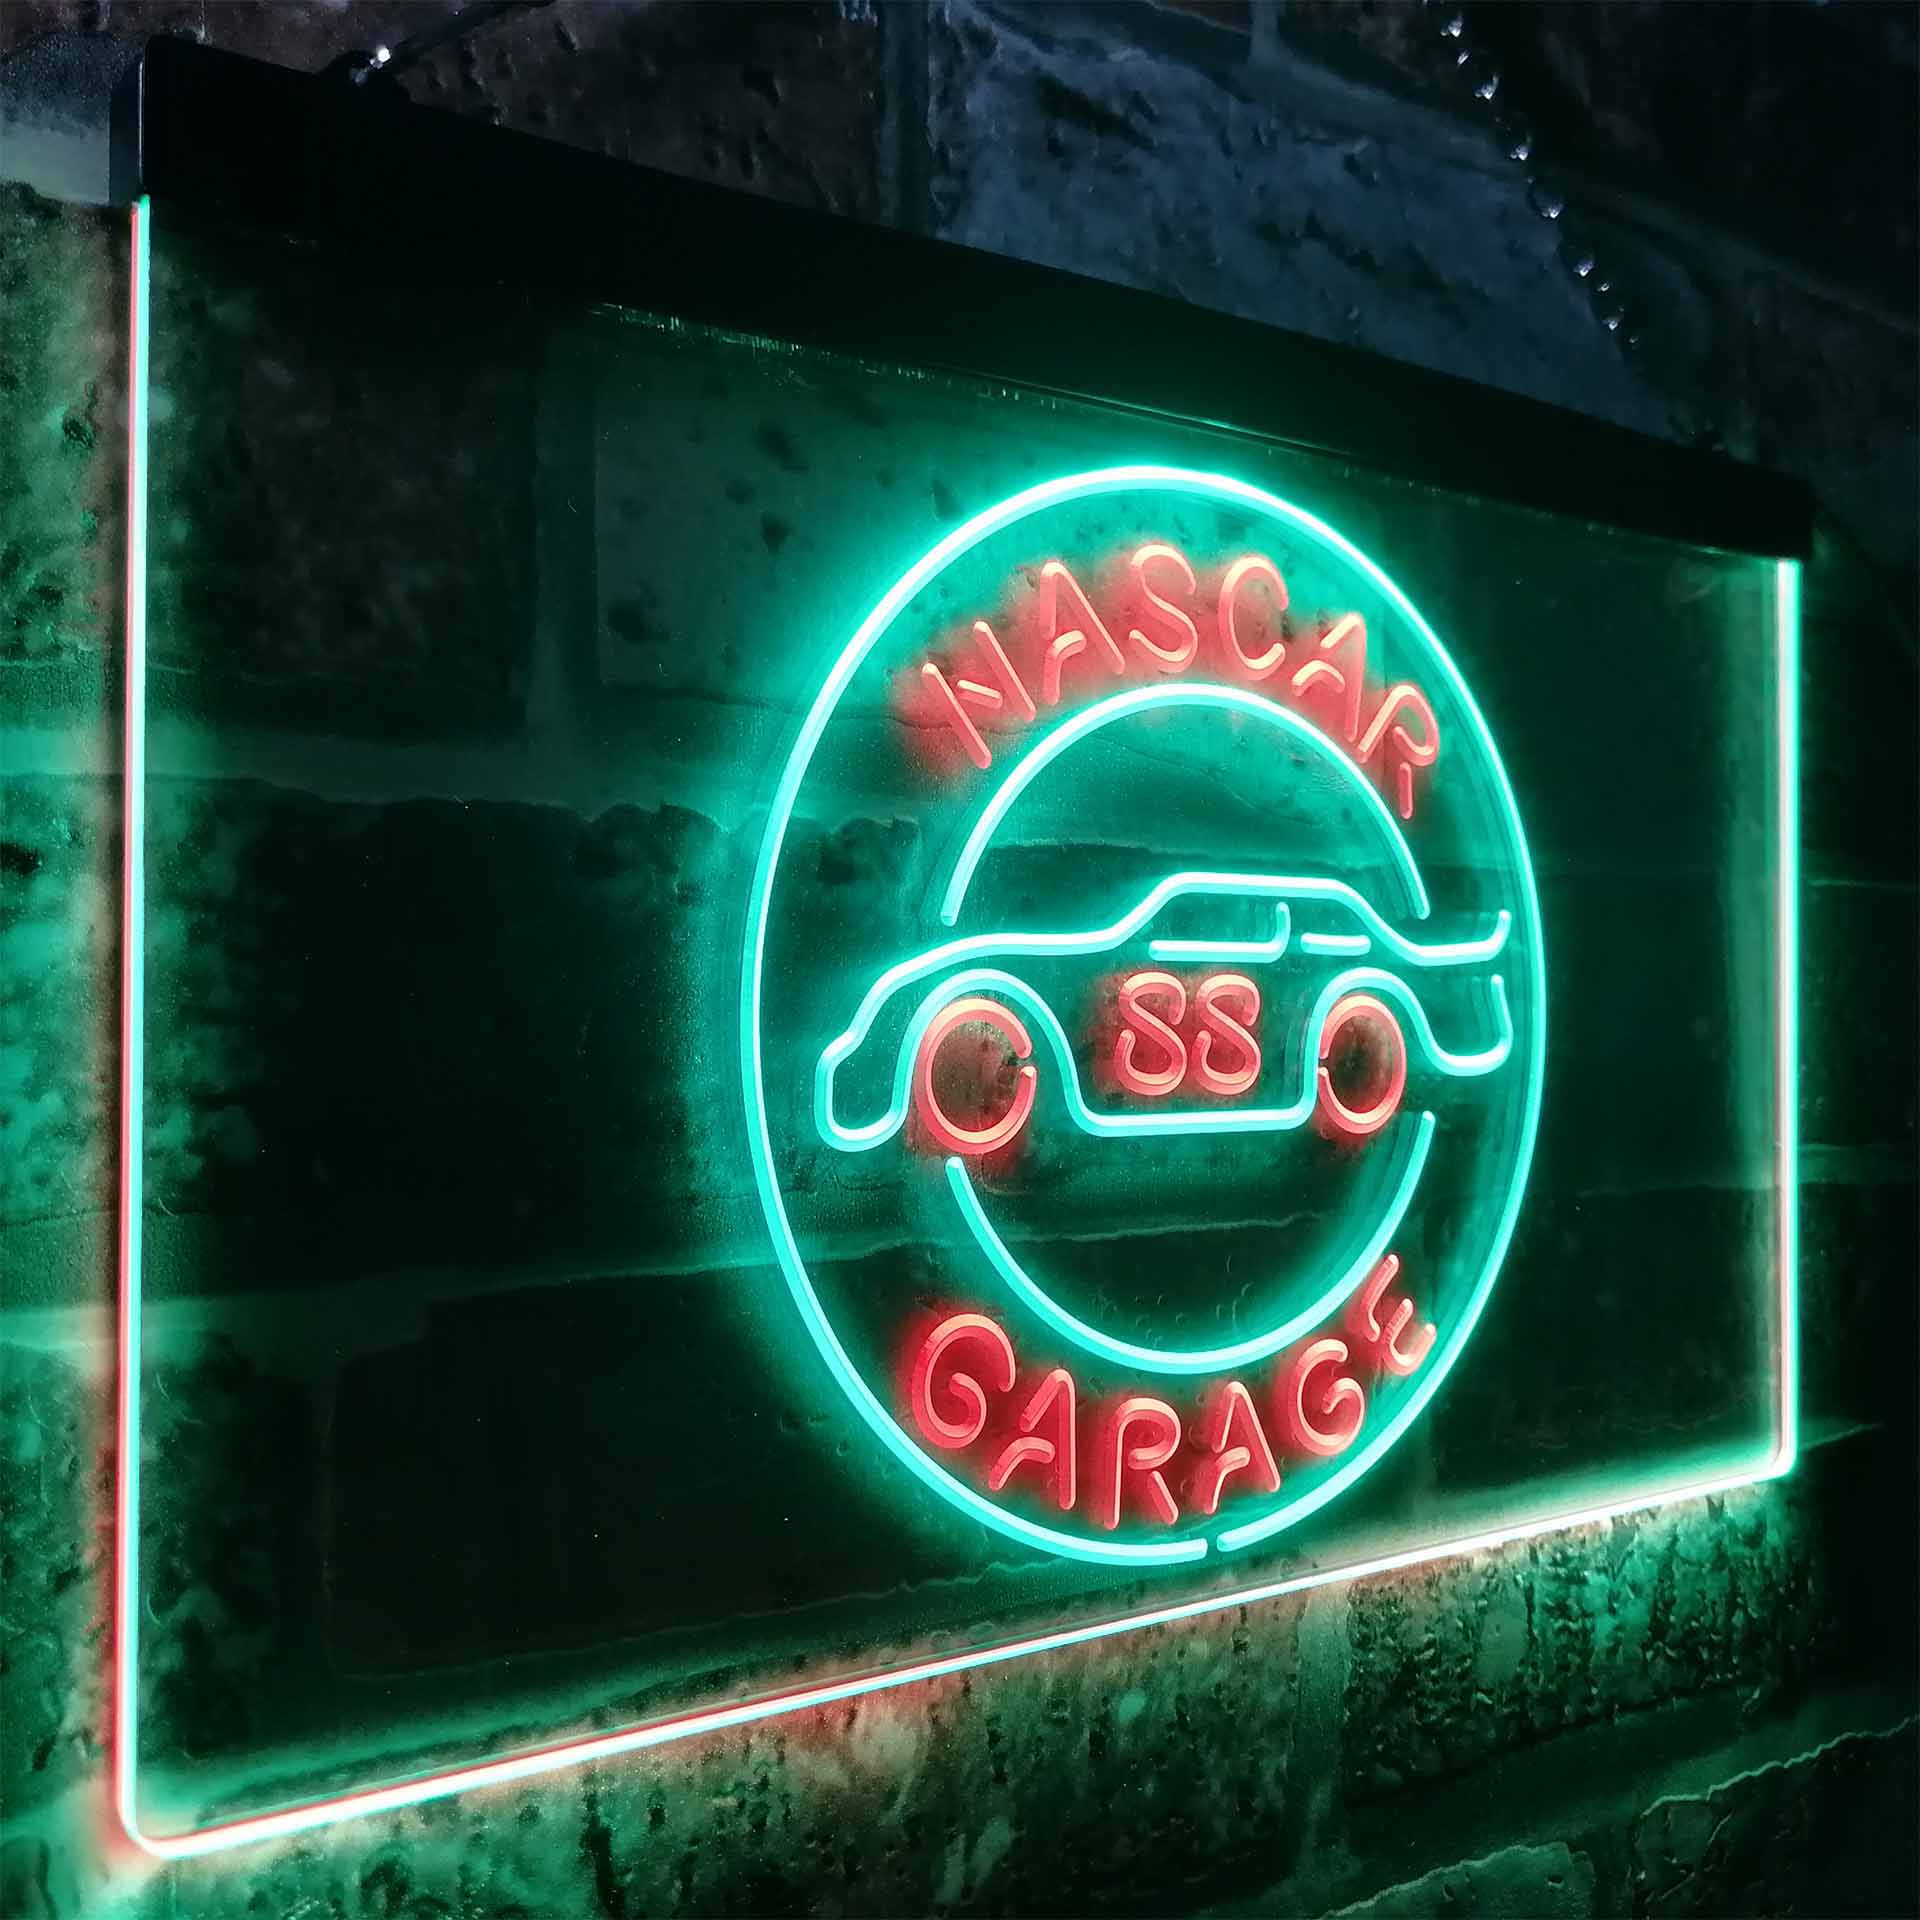 Nascar 88 Garage Dale Jr. League Club LED Neon Sign